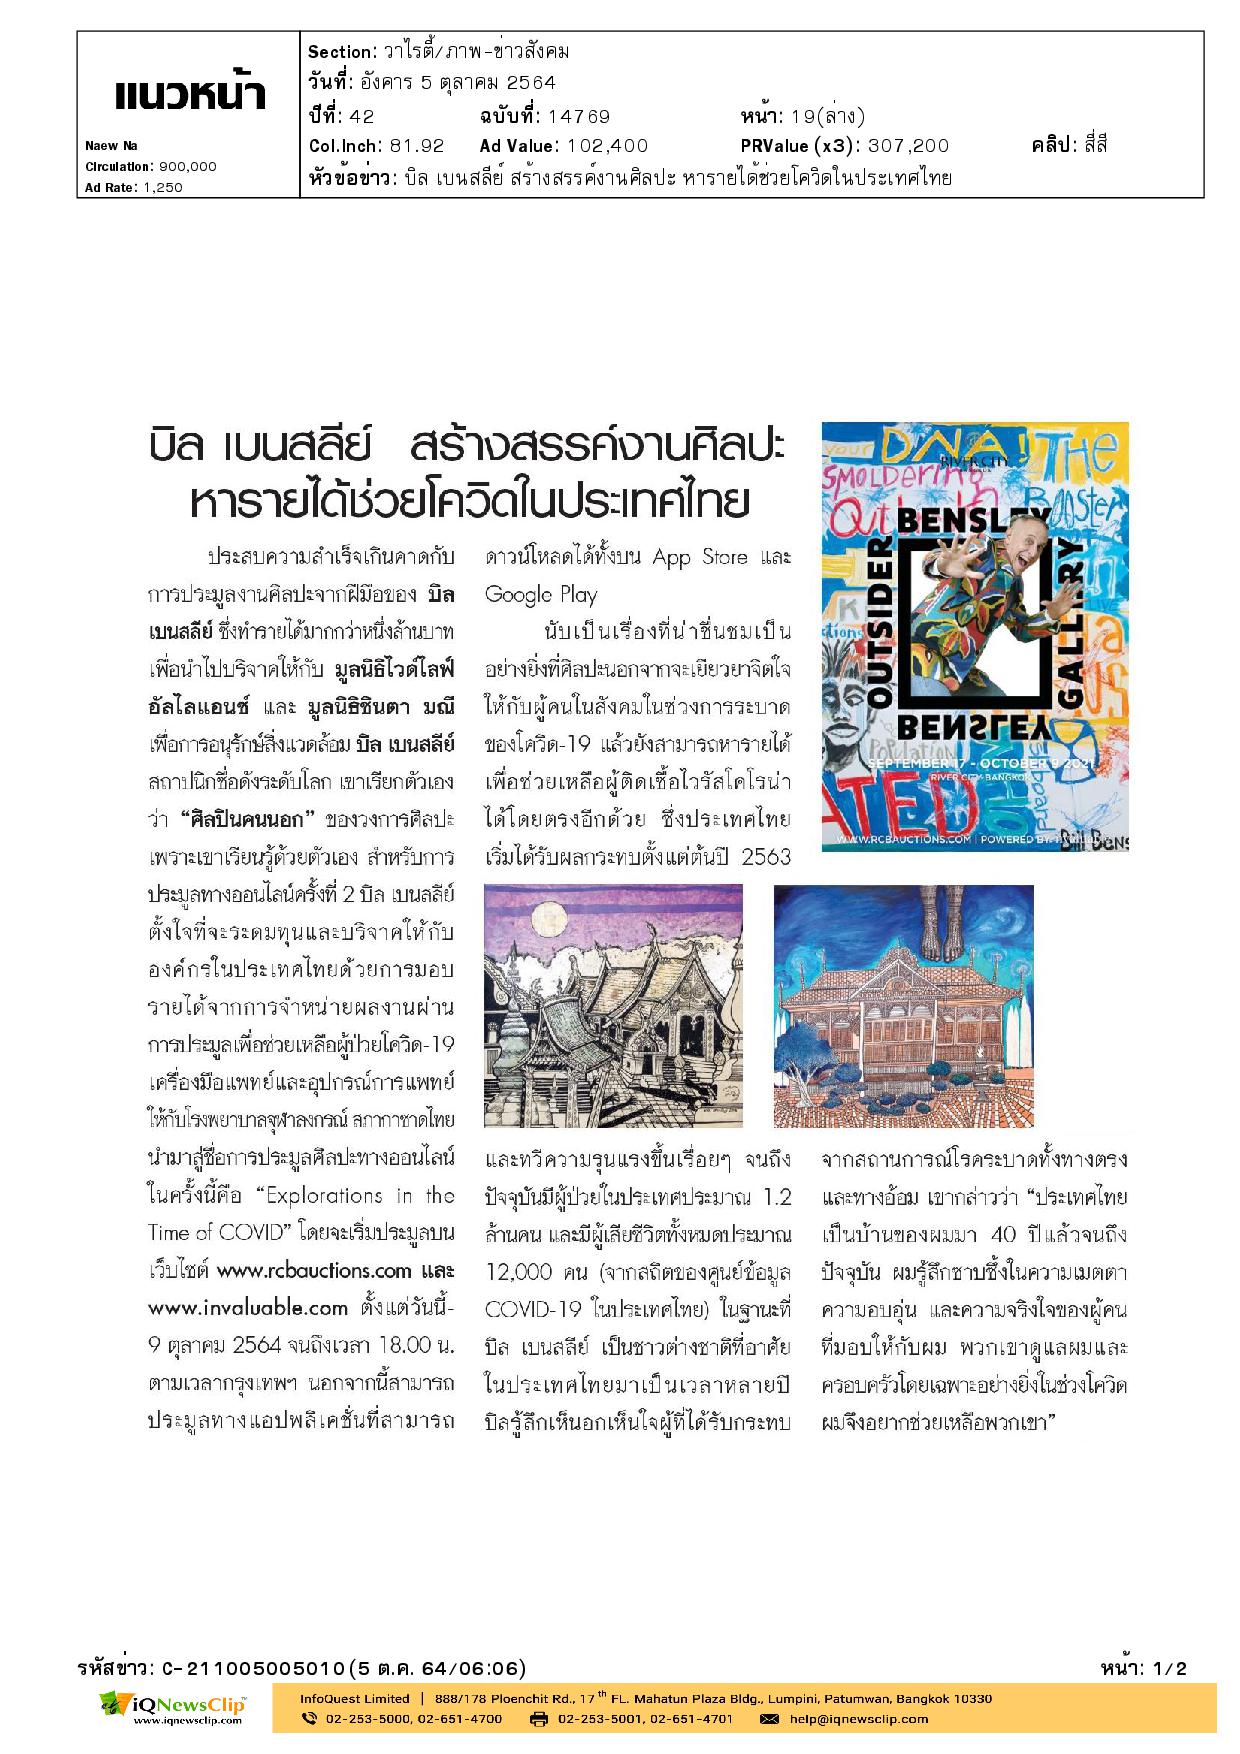 บทความเรื่อง บิล เบนสลีย์ สร้างสรรค์งานศิลปะ หารายได้ช่วยโควิดในประเทศไทย